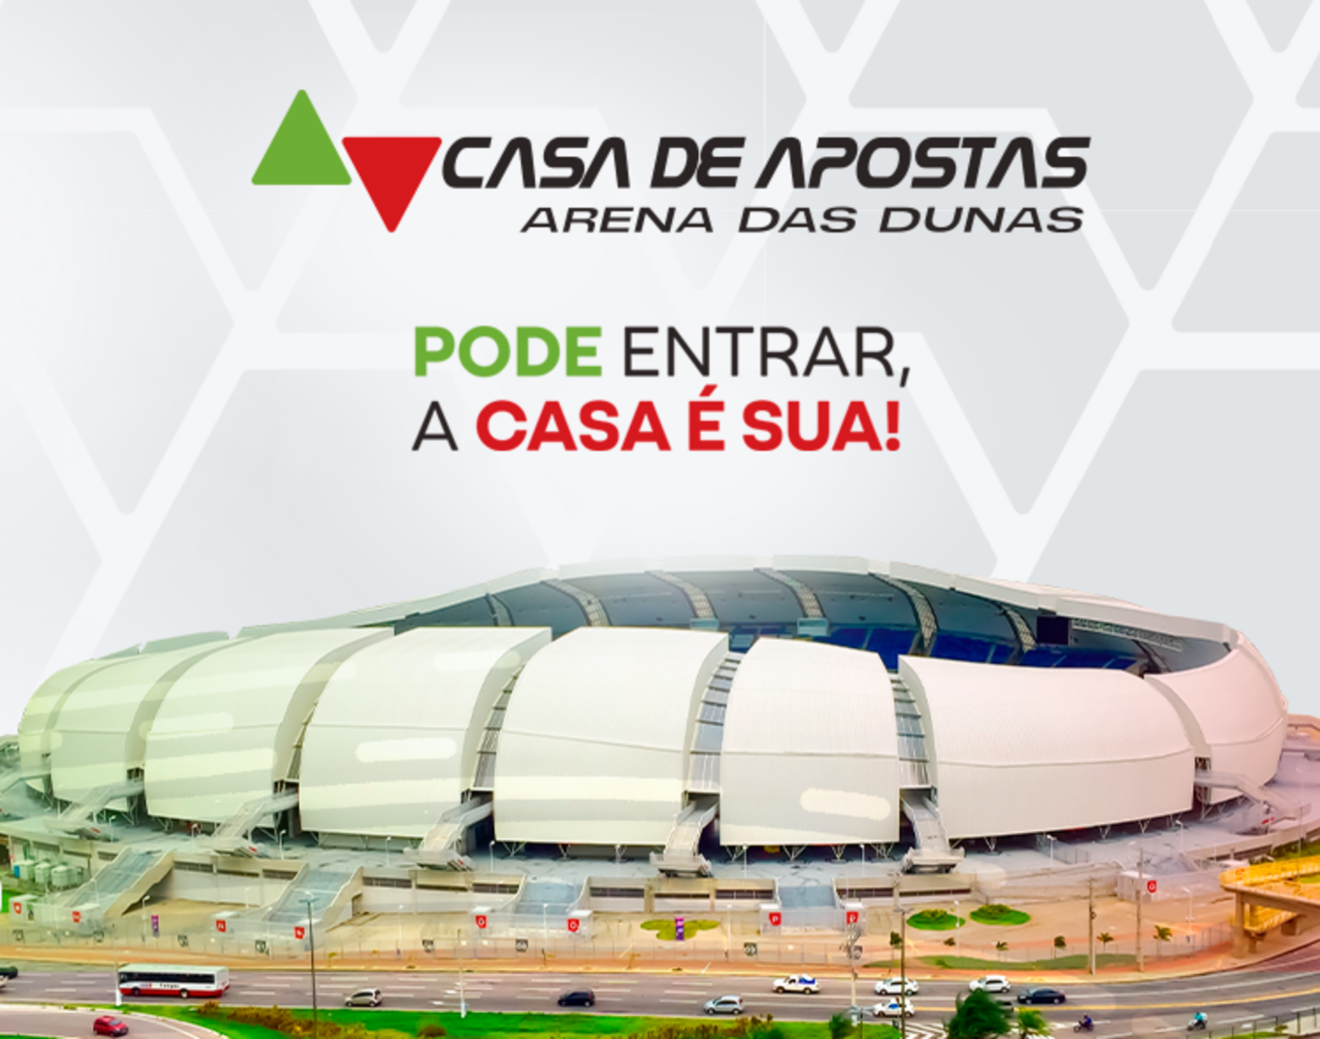 Casa de Apostas Arena das Dunas, em Natal, passa a ser seu novo nome ao fechar acordo de naming rights com a Casa de Apostas, a primeira grande marca brasileira no segmento.